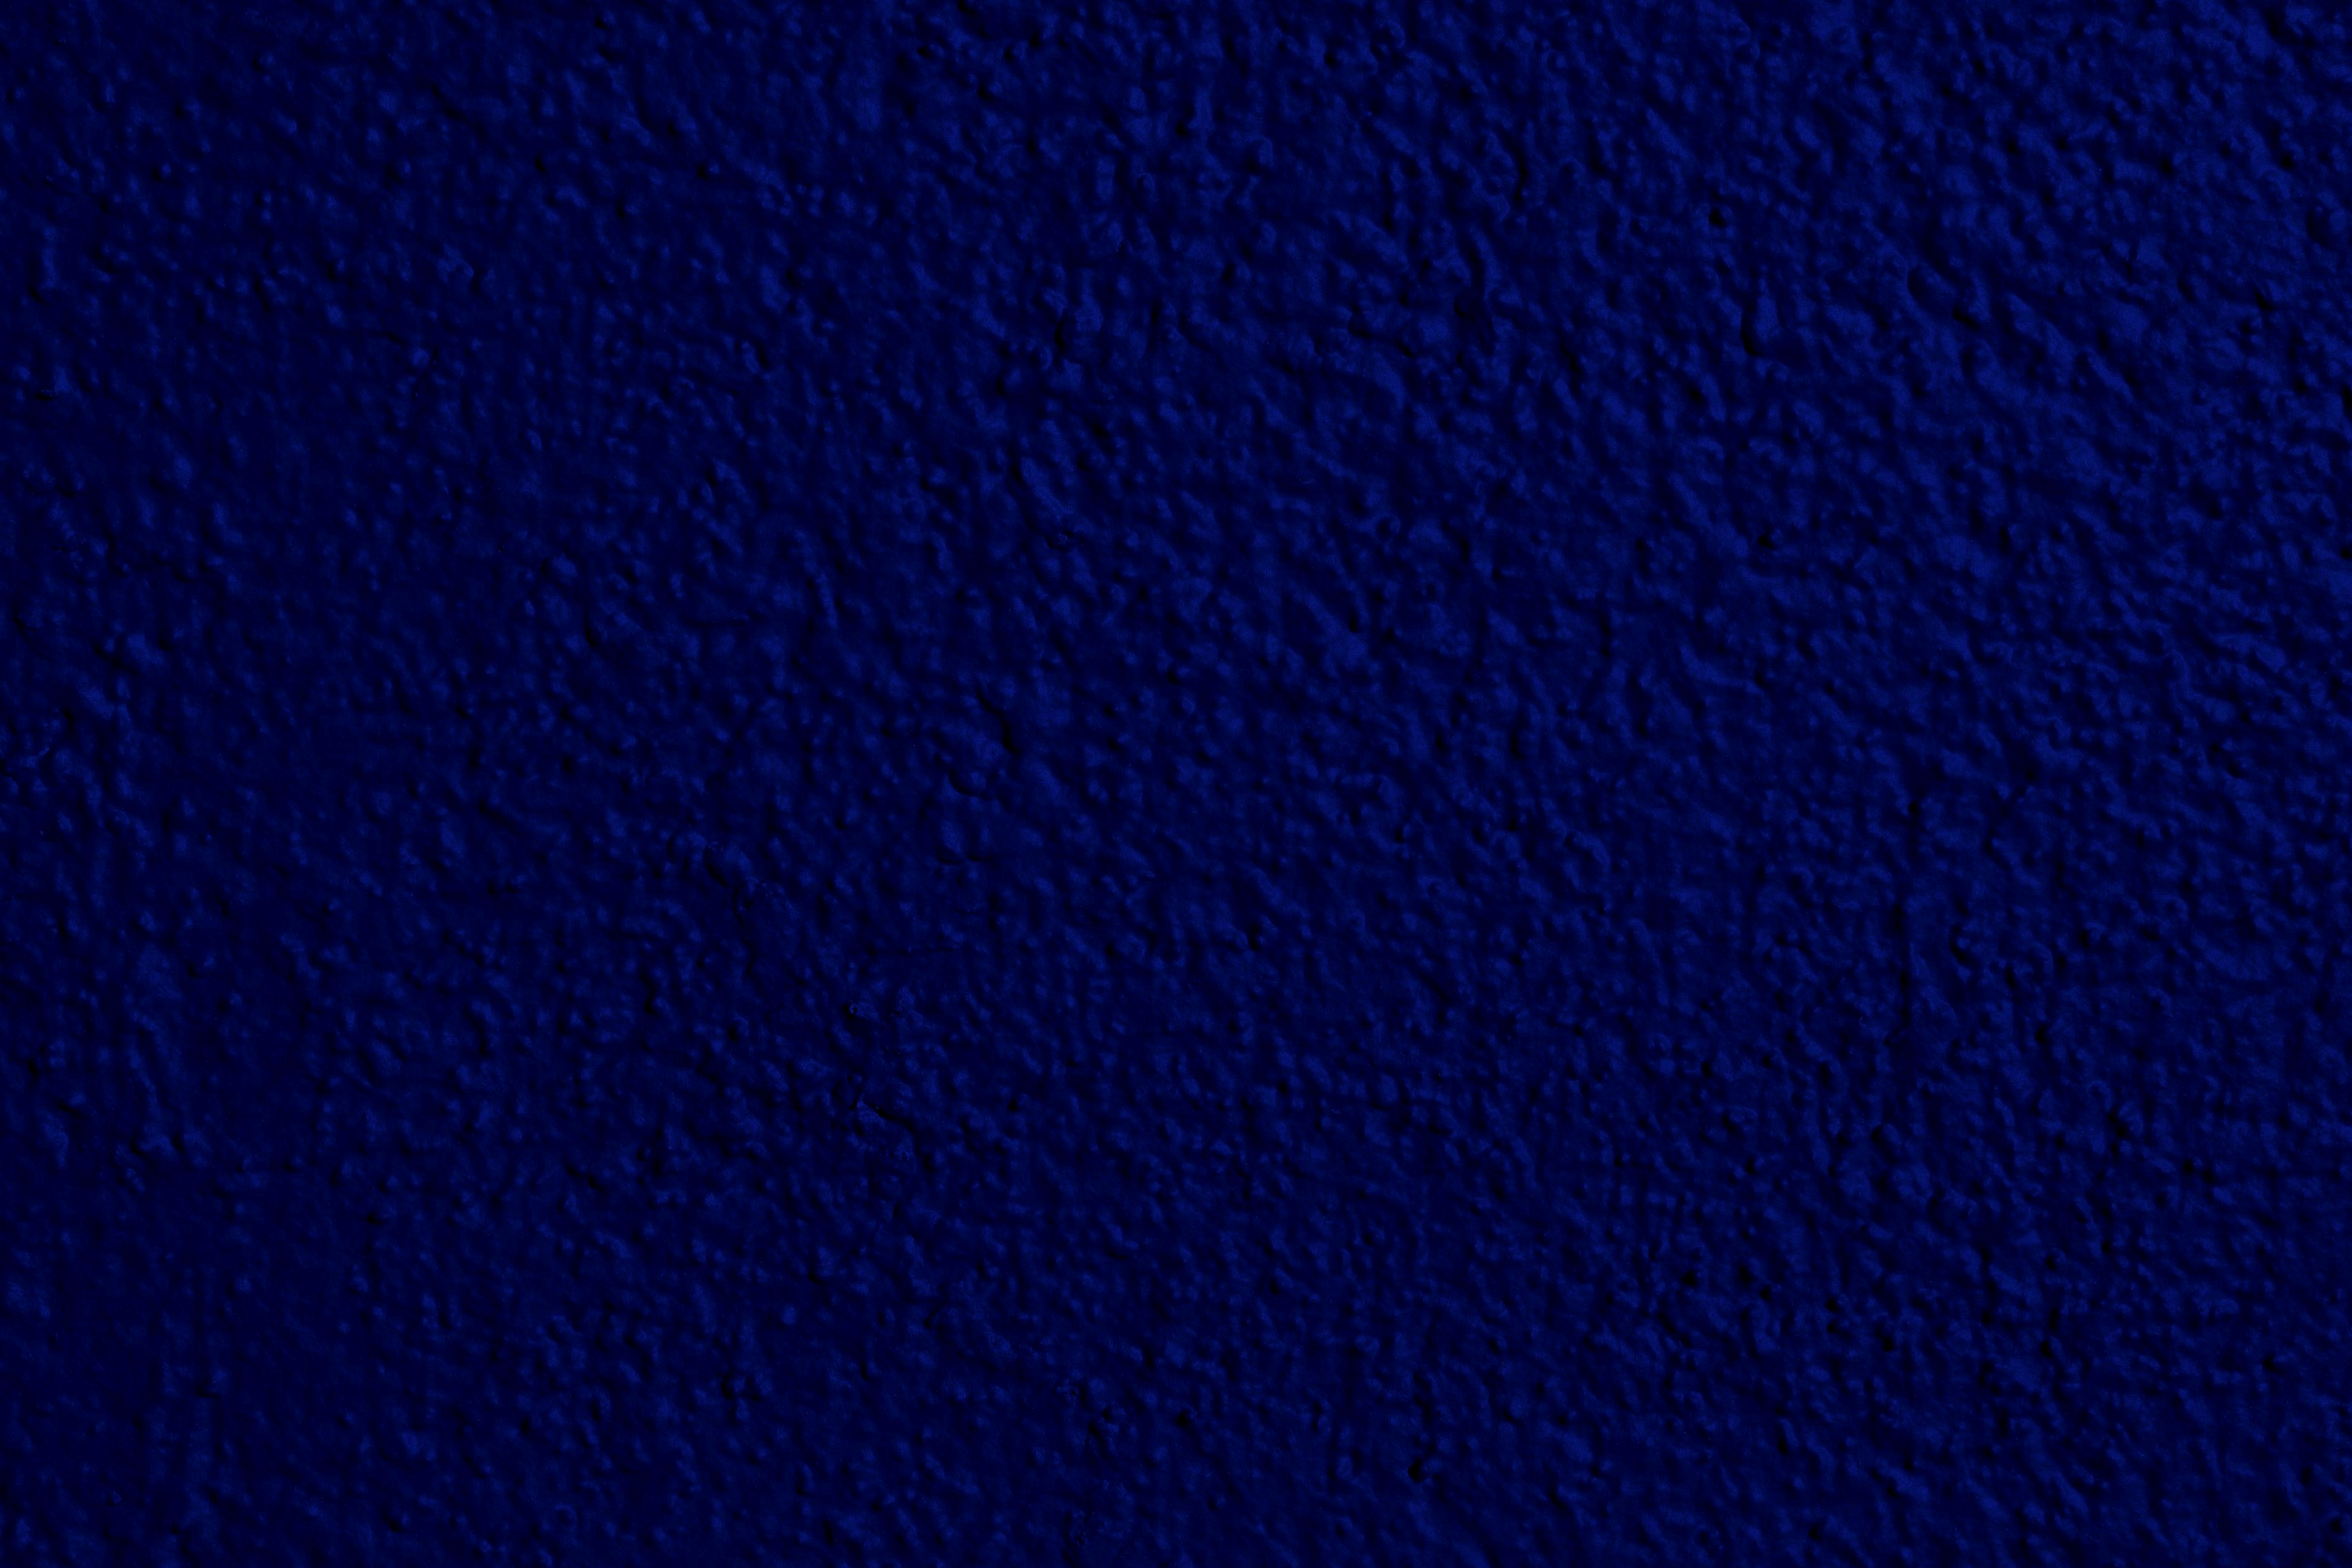 Best Of: blue wall texture Light Blue Wall Texture Blue Line 2 Wall ...